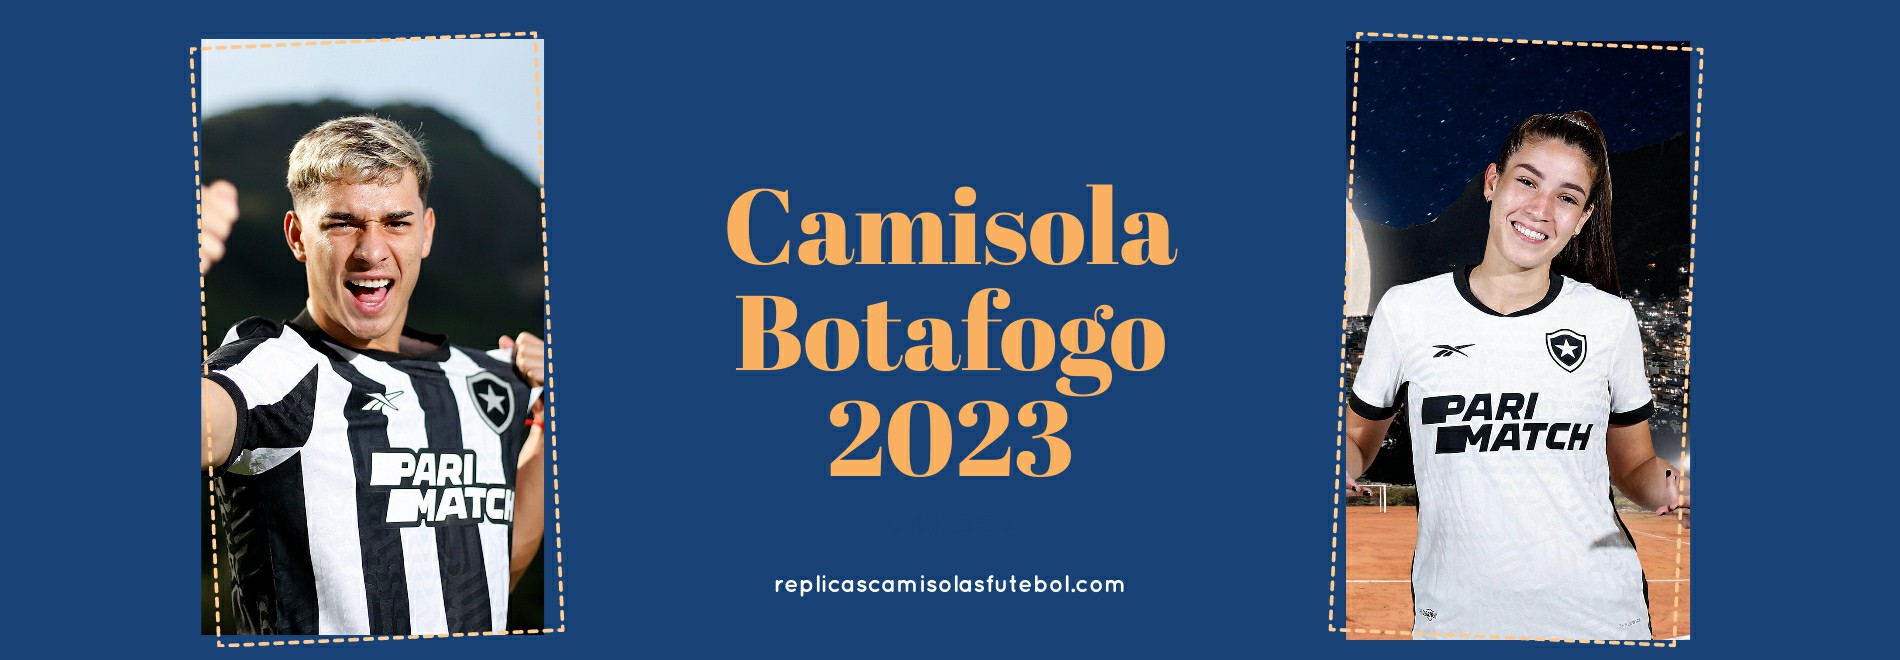 Camisola Botafogo 2023-2024